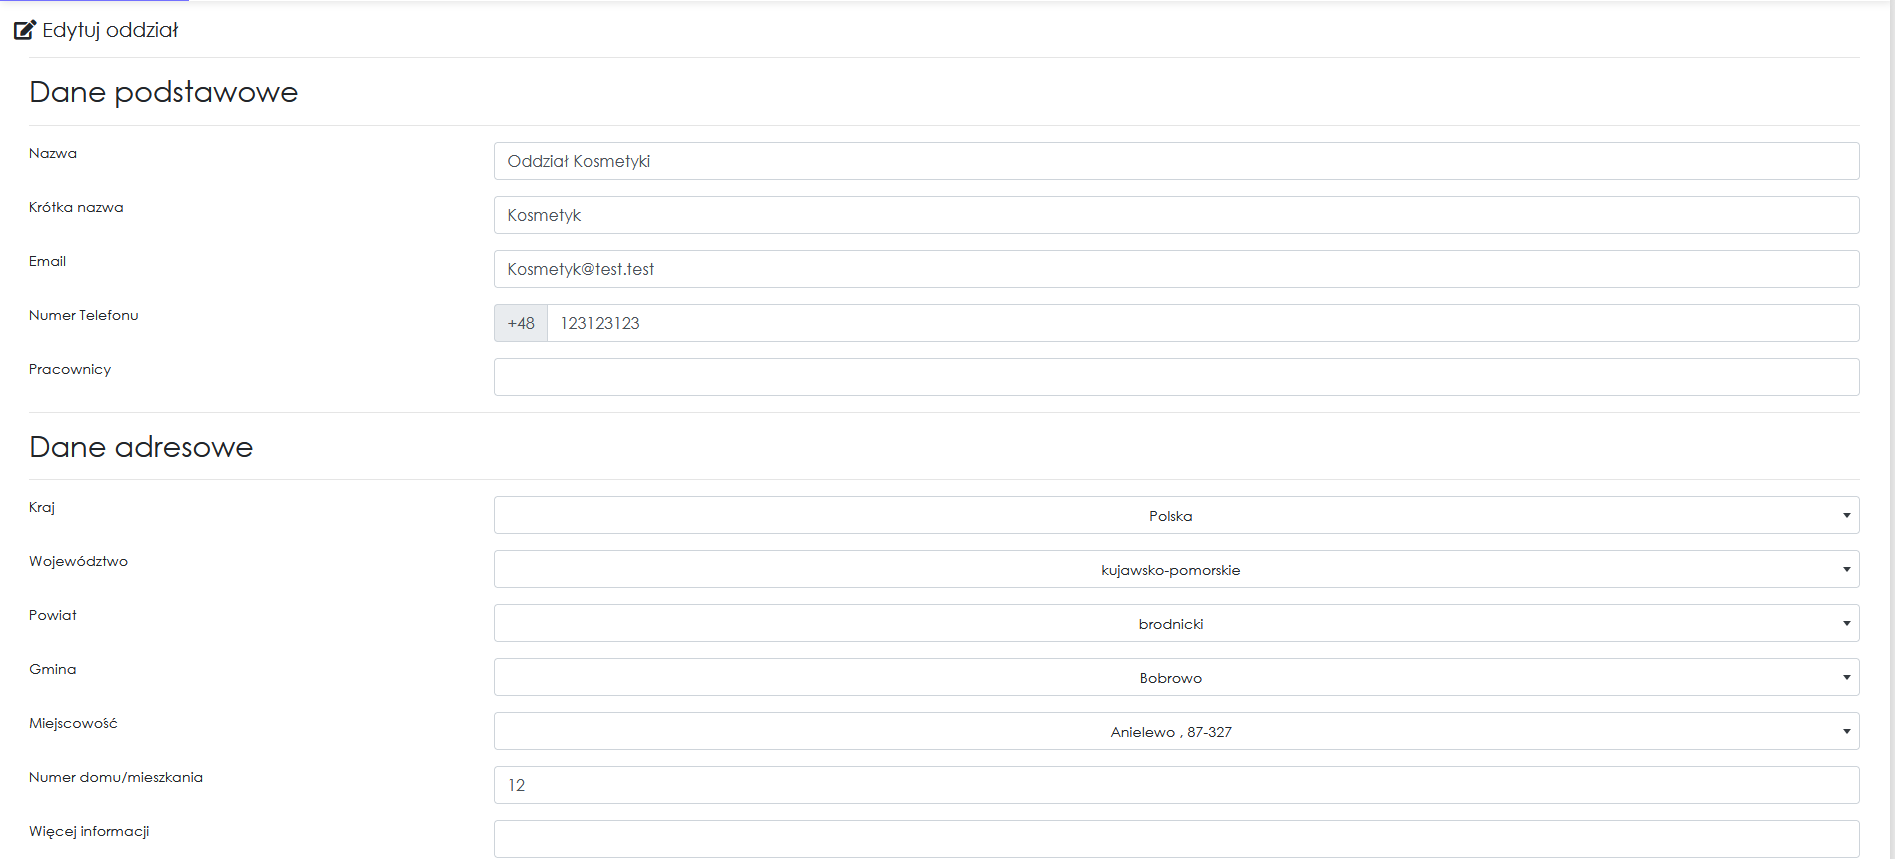 zrzut ekranu edycji oddziałów z aplikacji Cerez